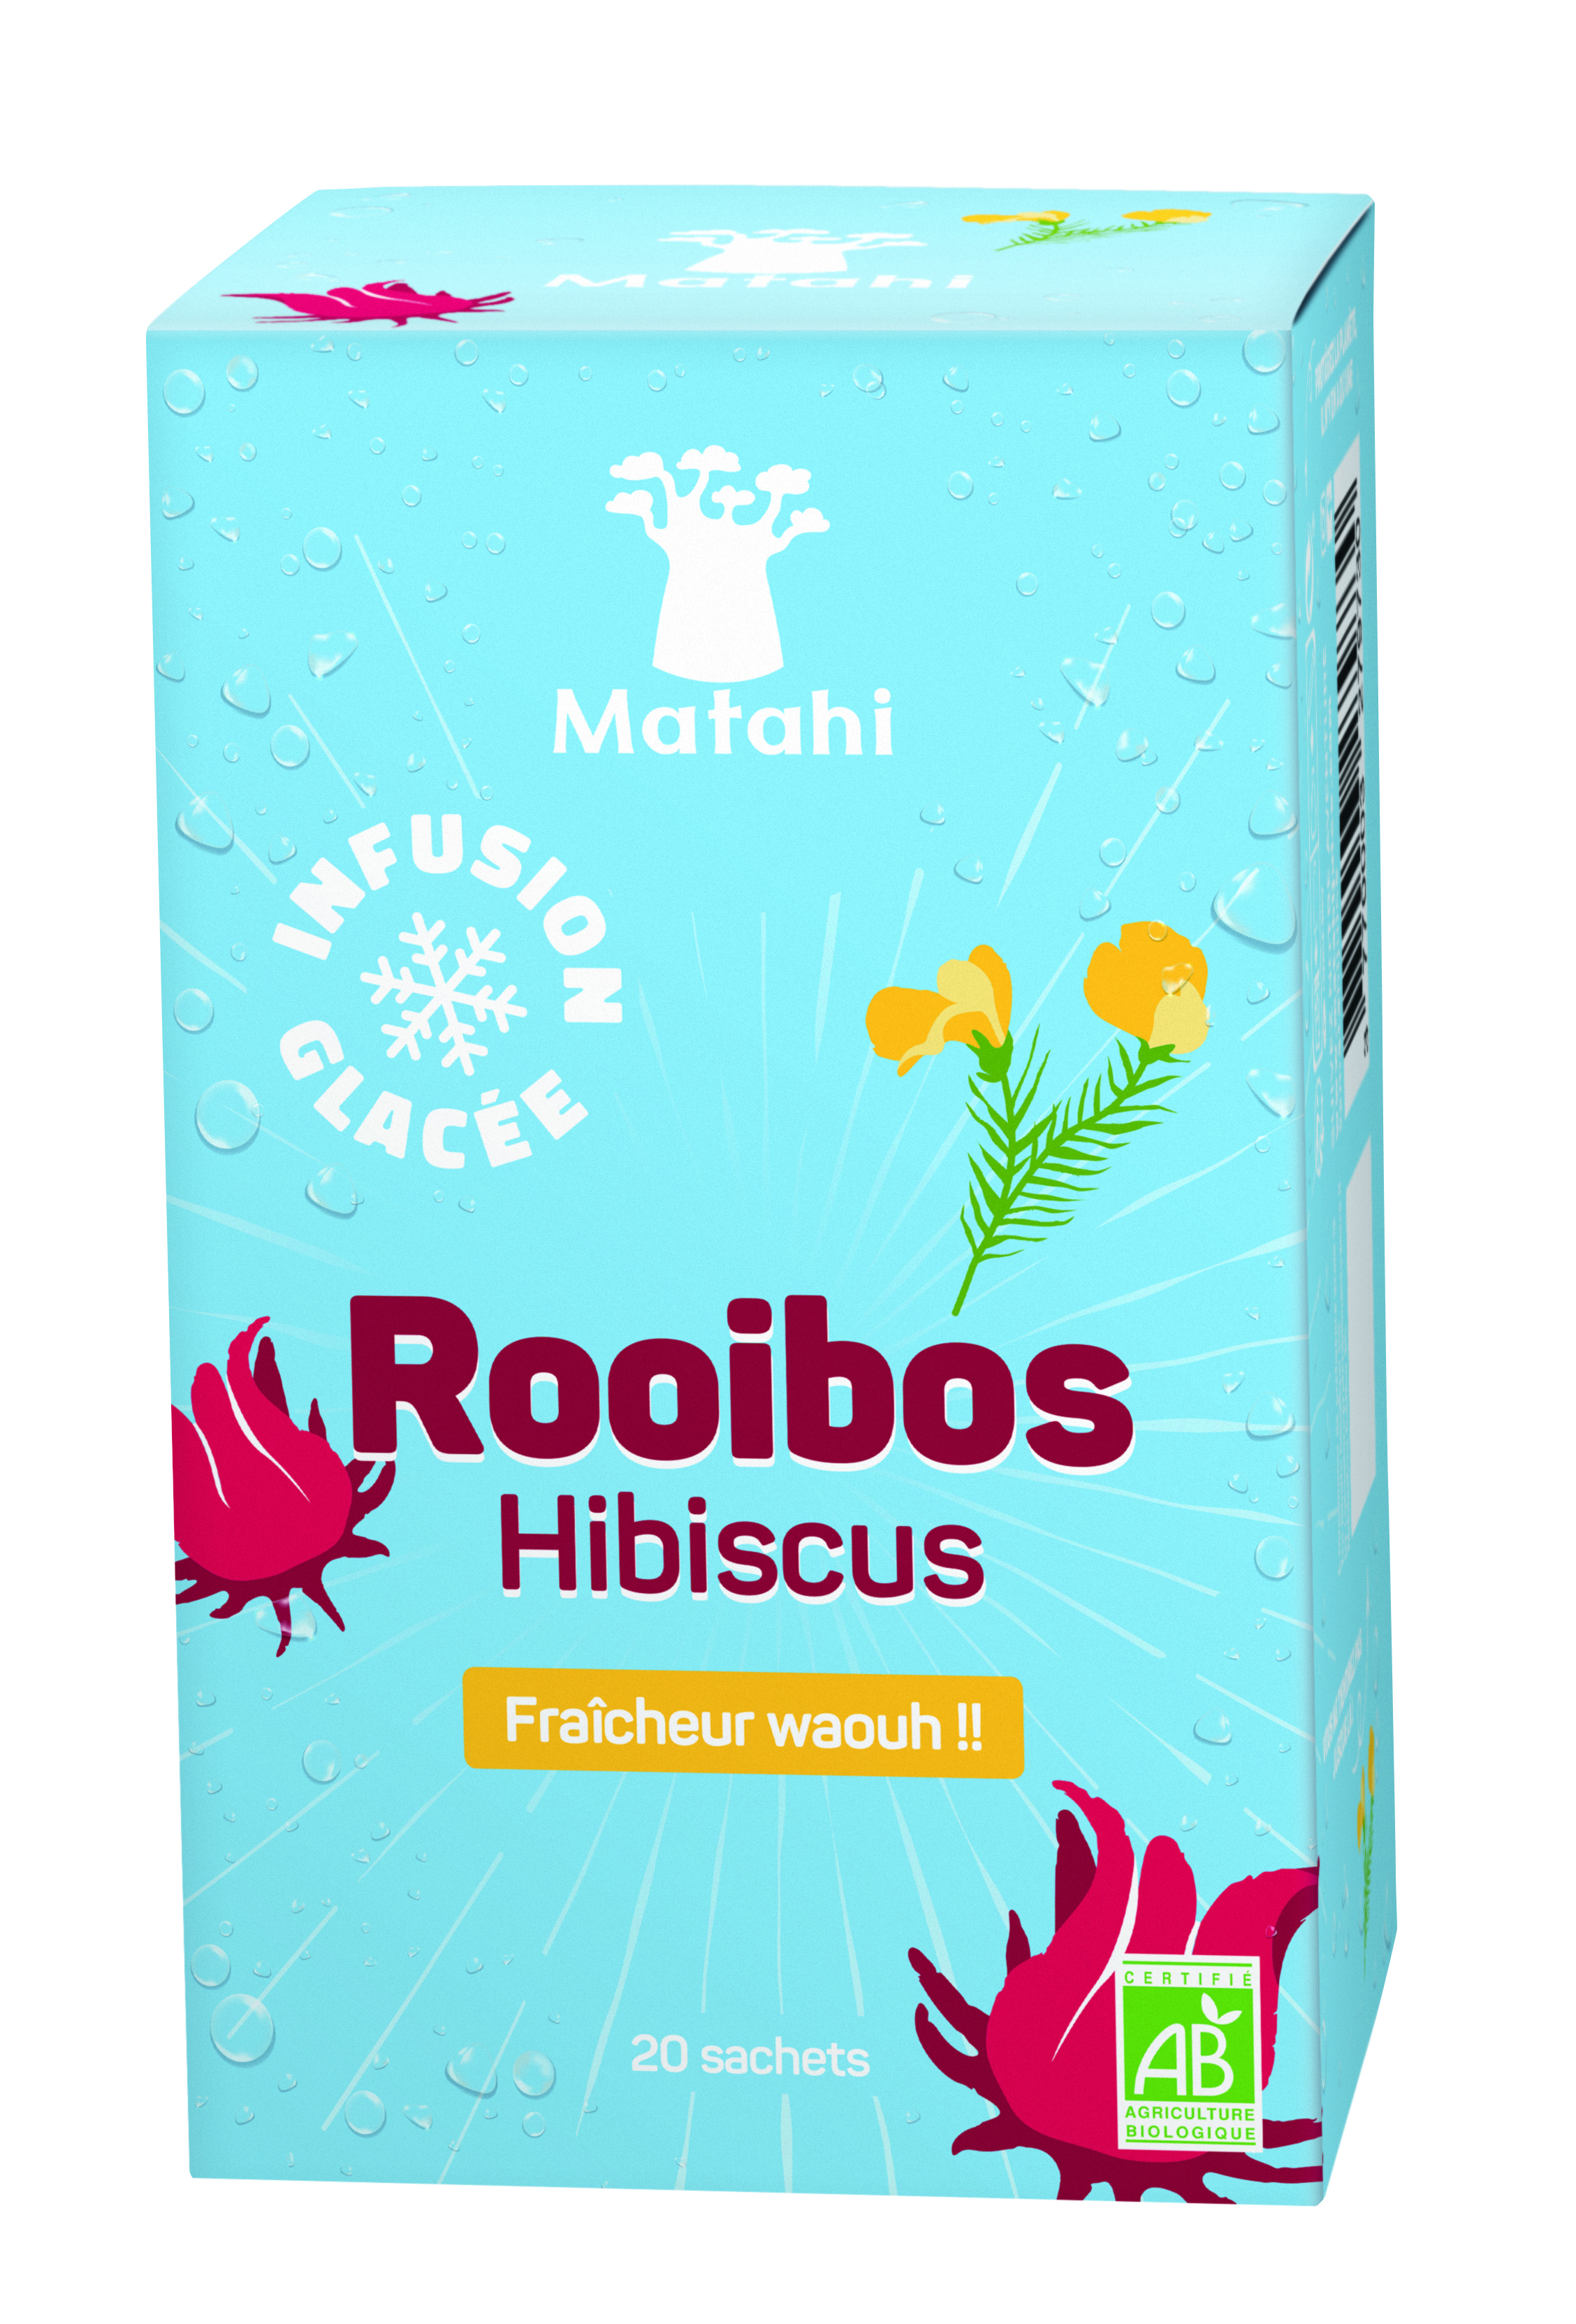 有机 Rooibos Hibiscus 冰浸液（12 X 20 袋 X 2g） - Matahi